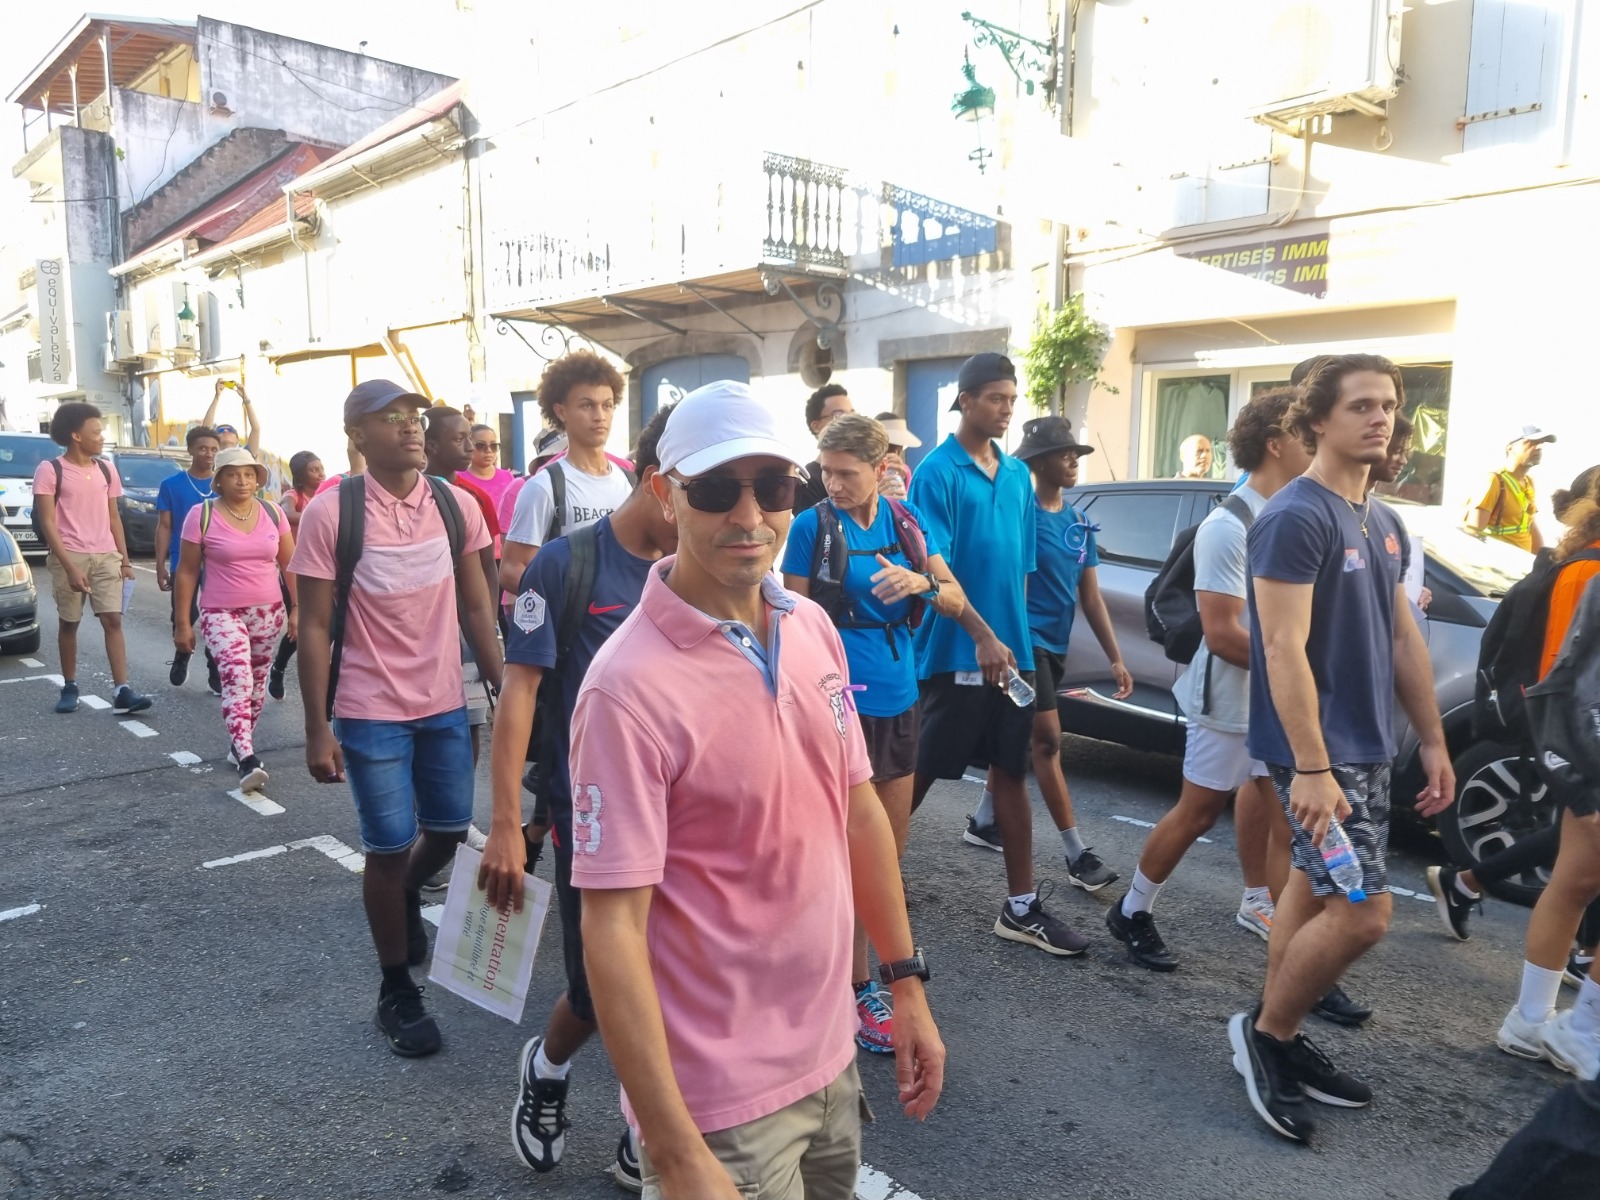     [VIDEO] 200 lycéens de Raoul-Georges Nicolo marchent contre le Cancer à Basse-Terre

